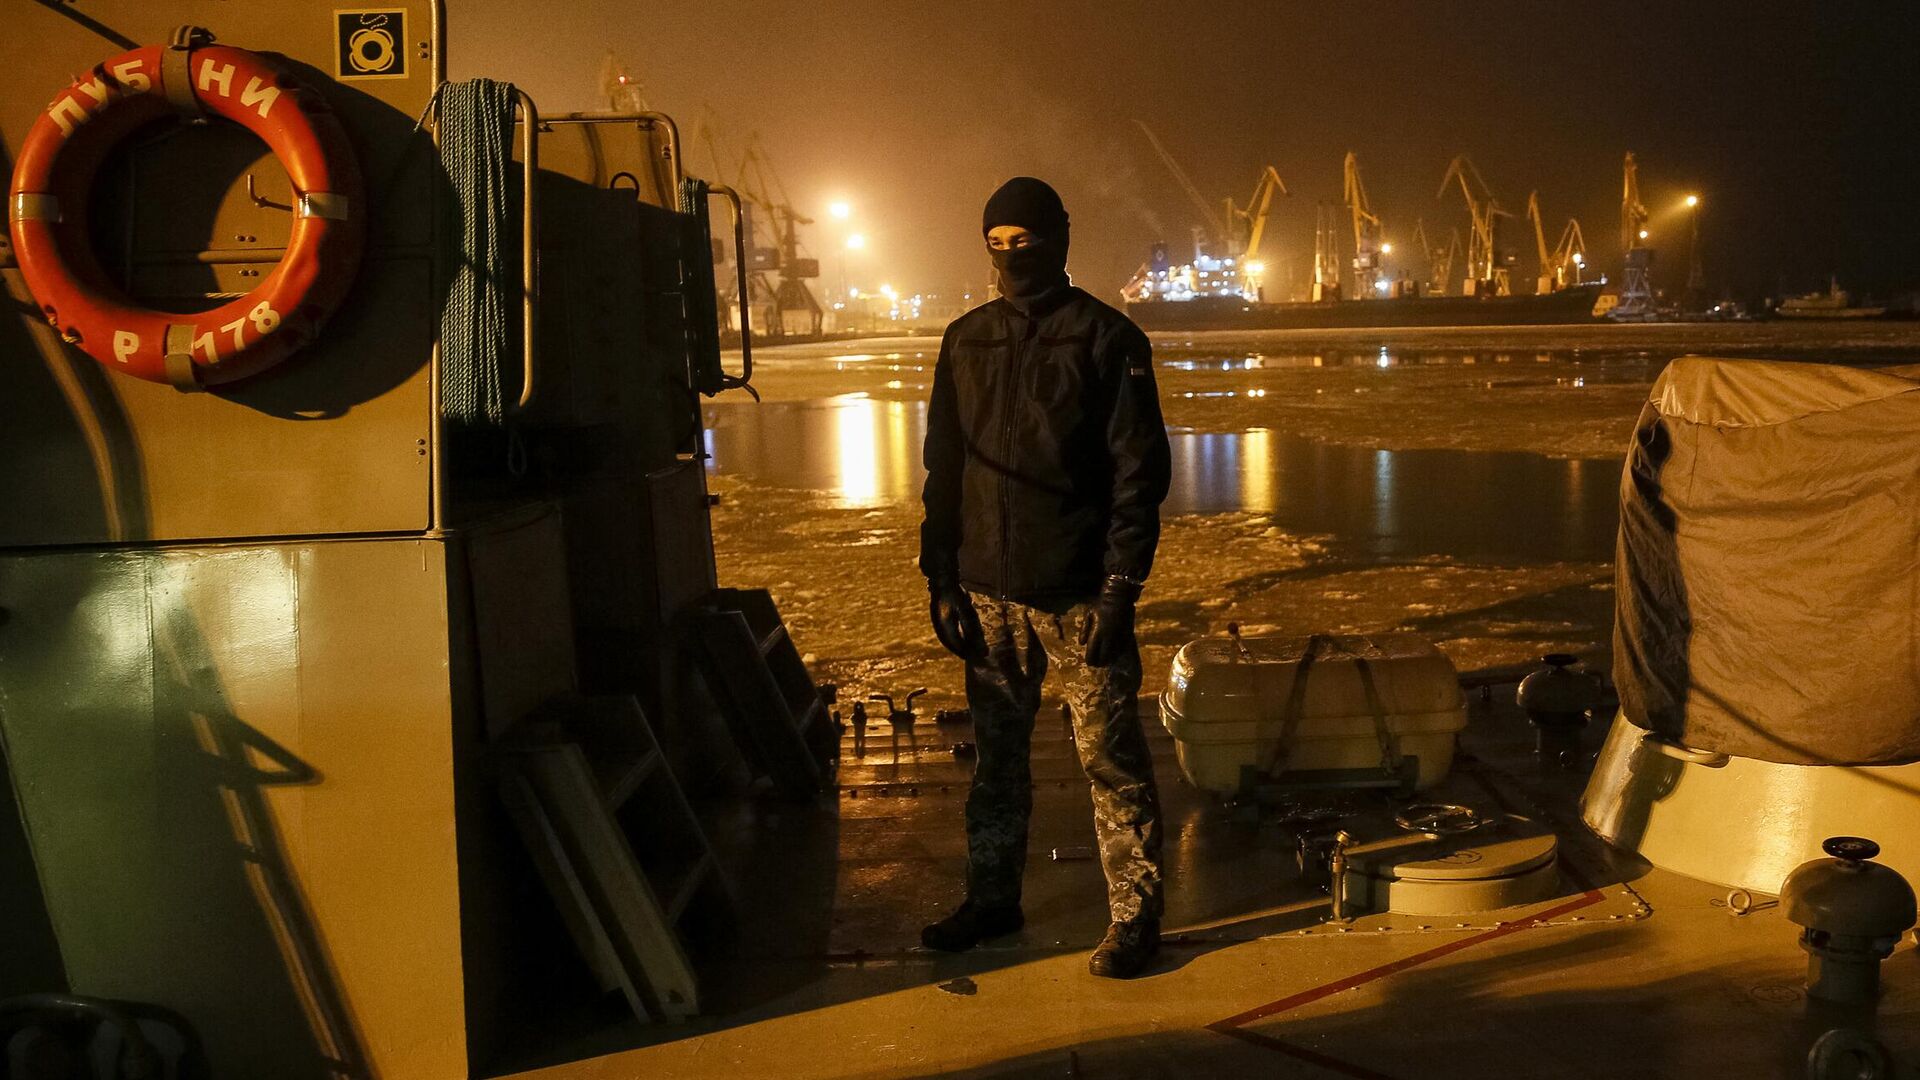 Un militar ucrainean stă pe puntea navei de comandă Donbass, ancorată în portul Mariupol Azov. - Sputnik Moldova-România, 1920, 13.04.2022